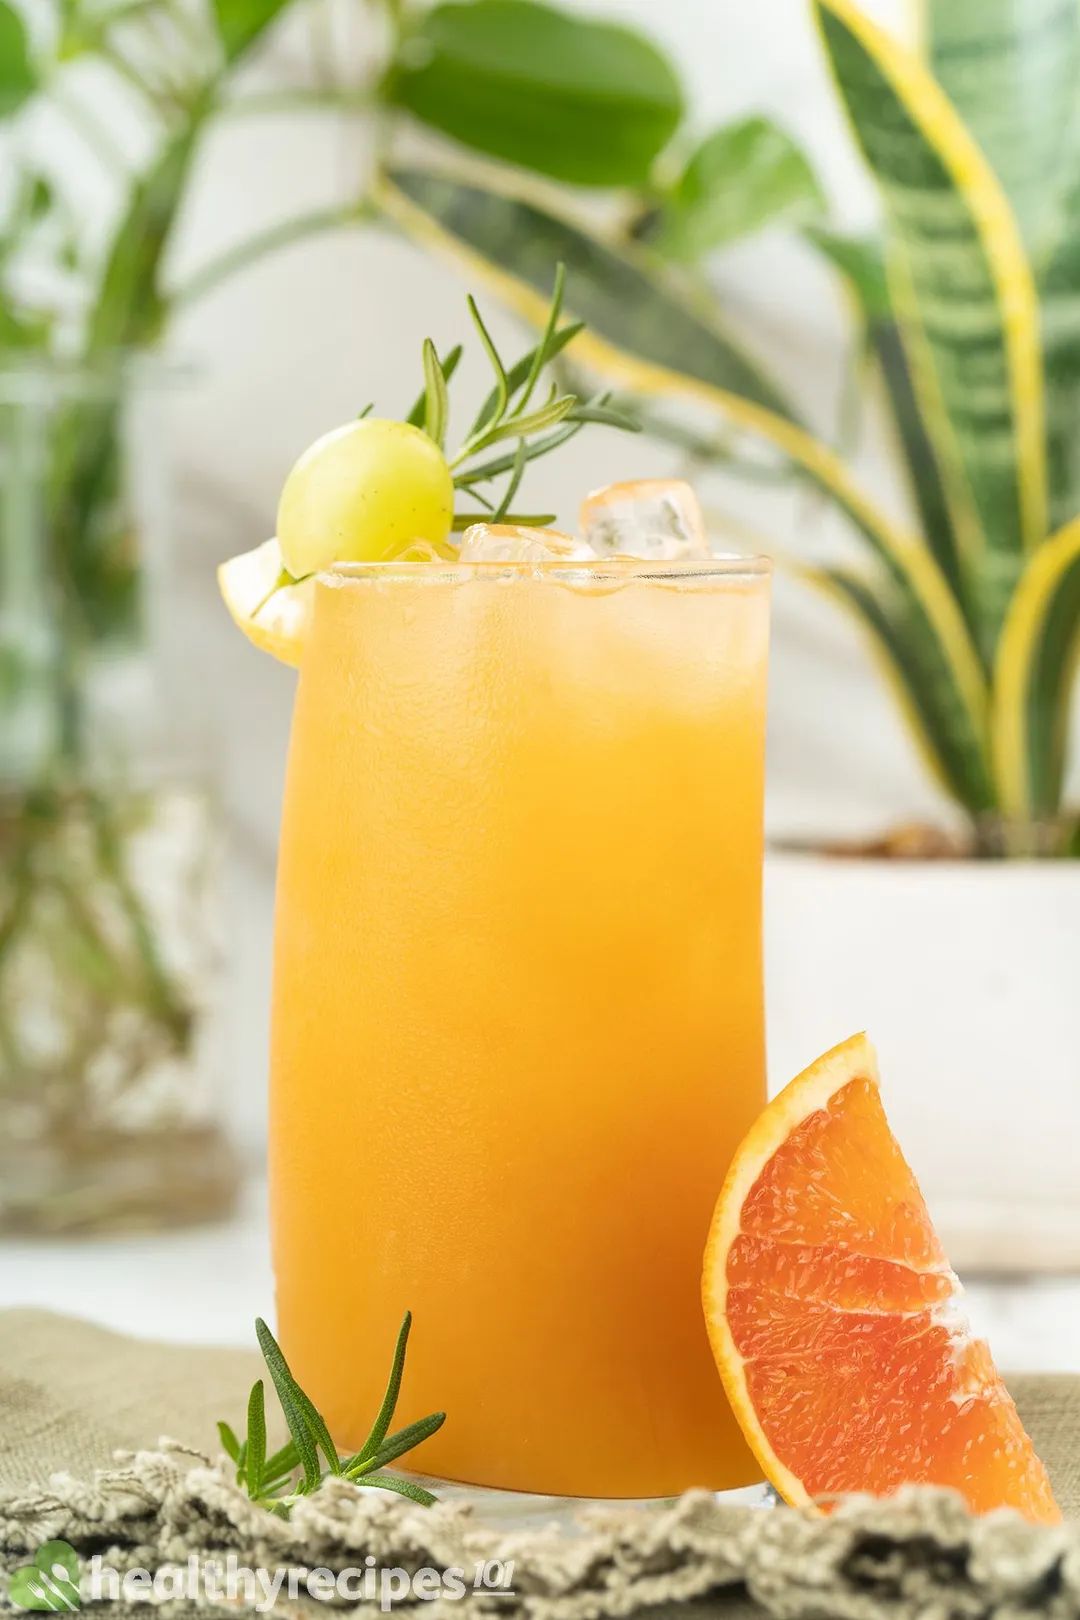 xanax and grapefruit juice